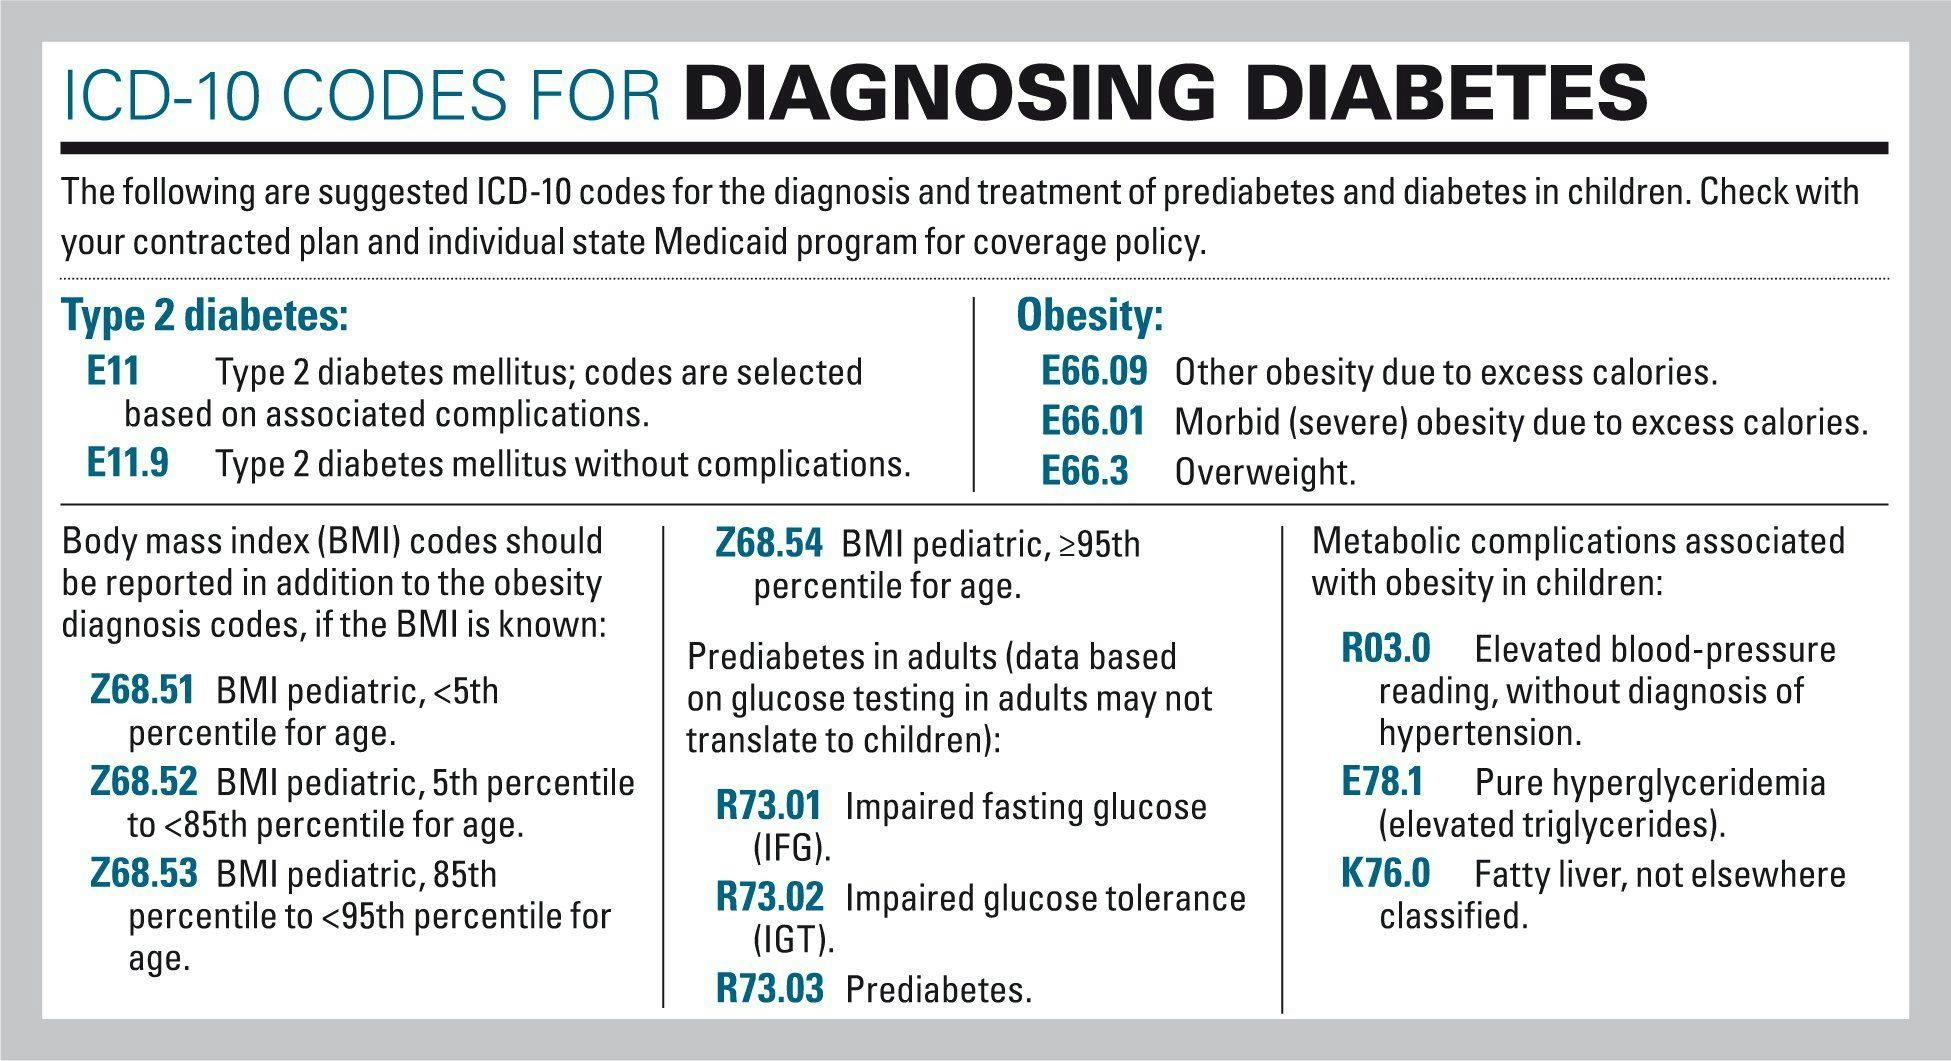 ICD-10 codes for diagnosing diabetes